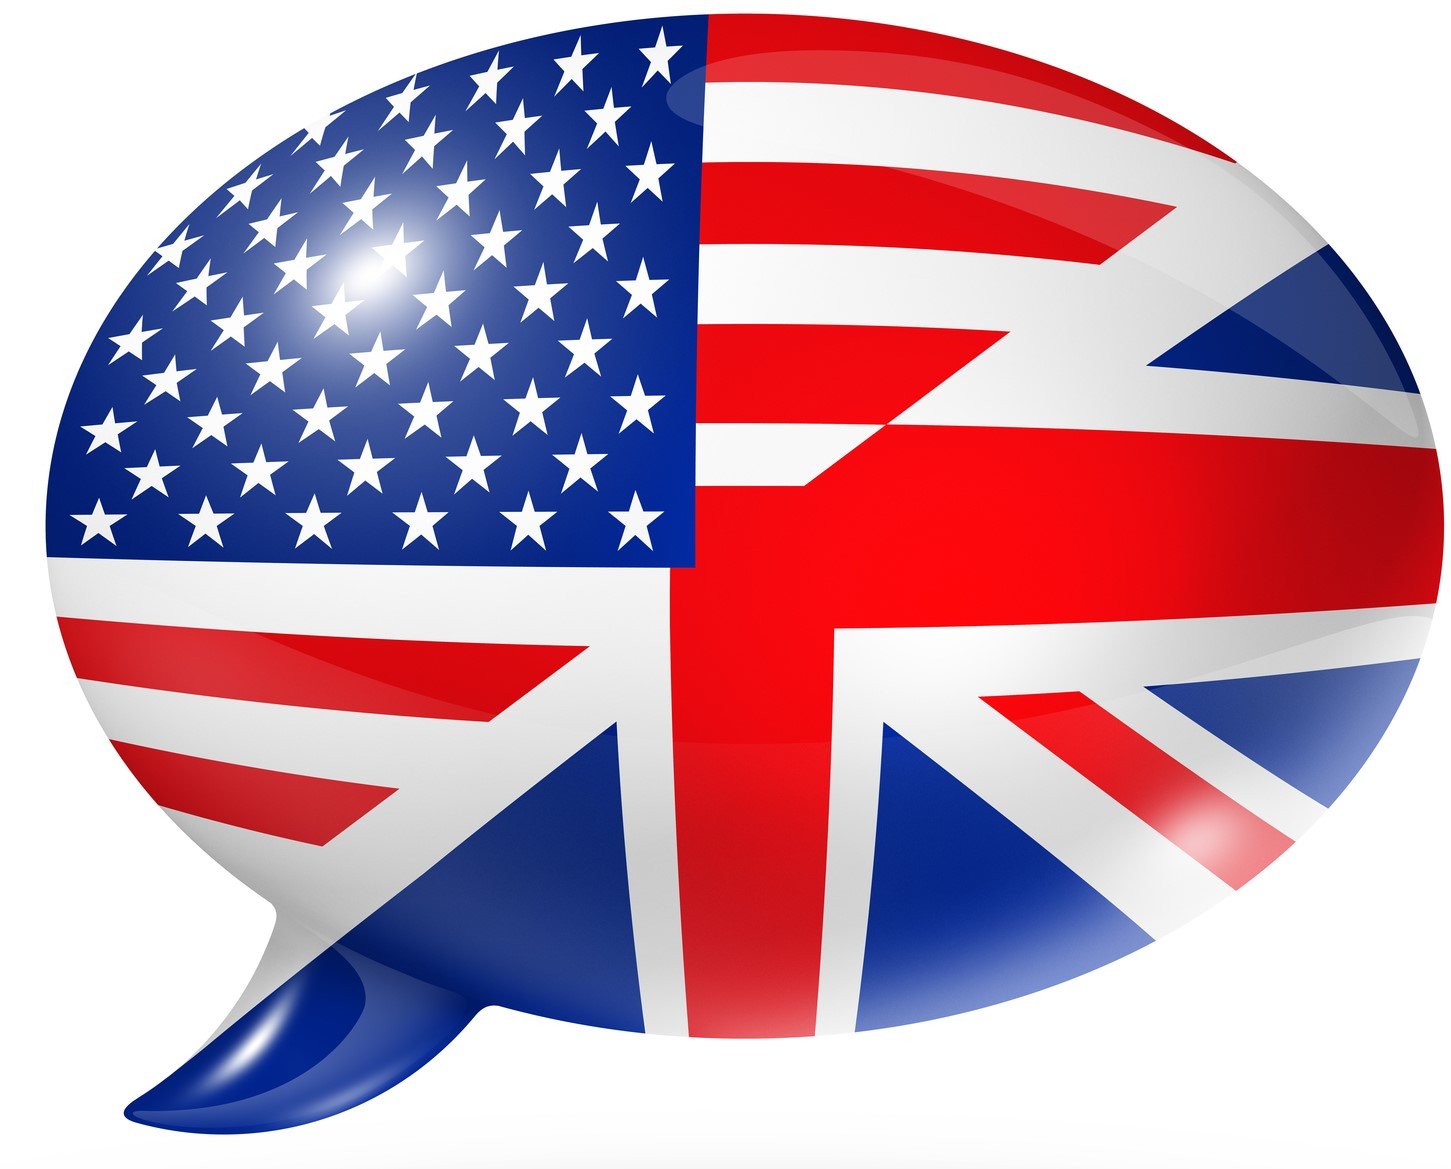 Inglês britânico e americano: conheça as diferenças - Toda Matéria